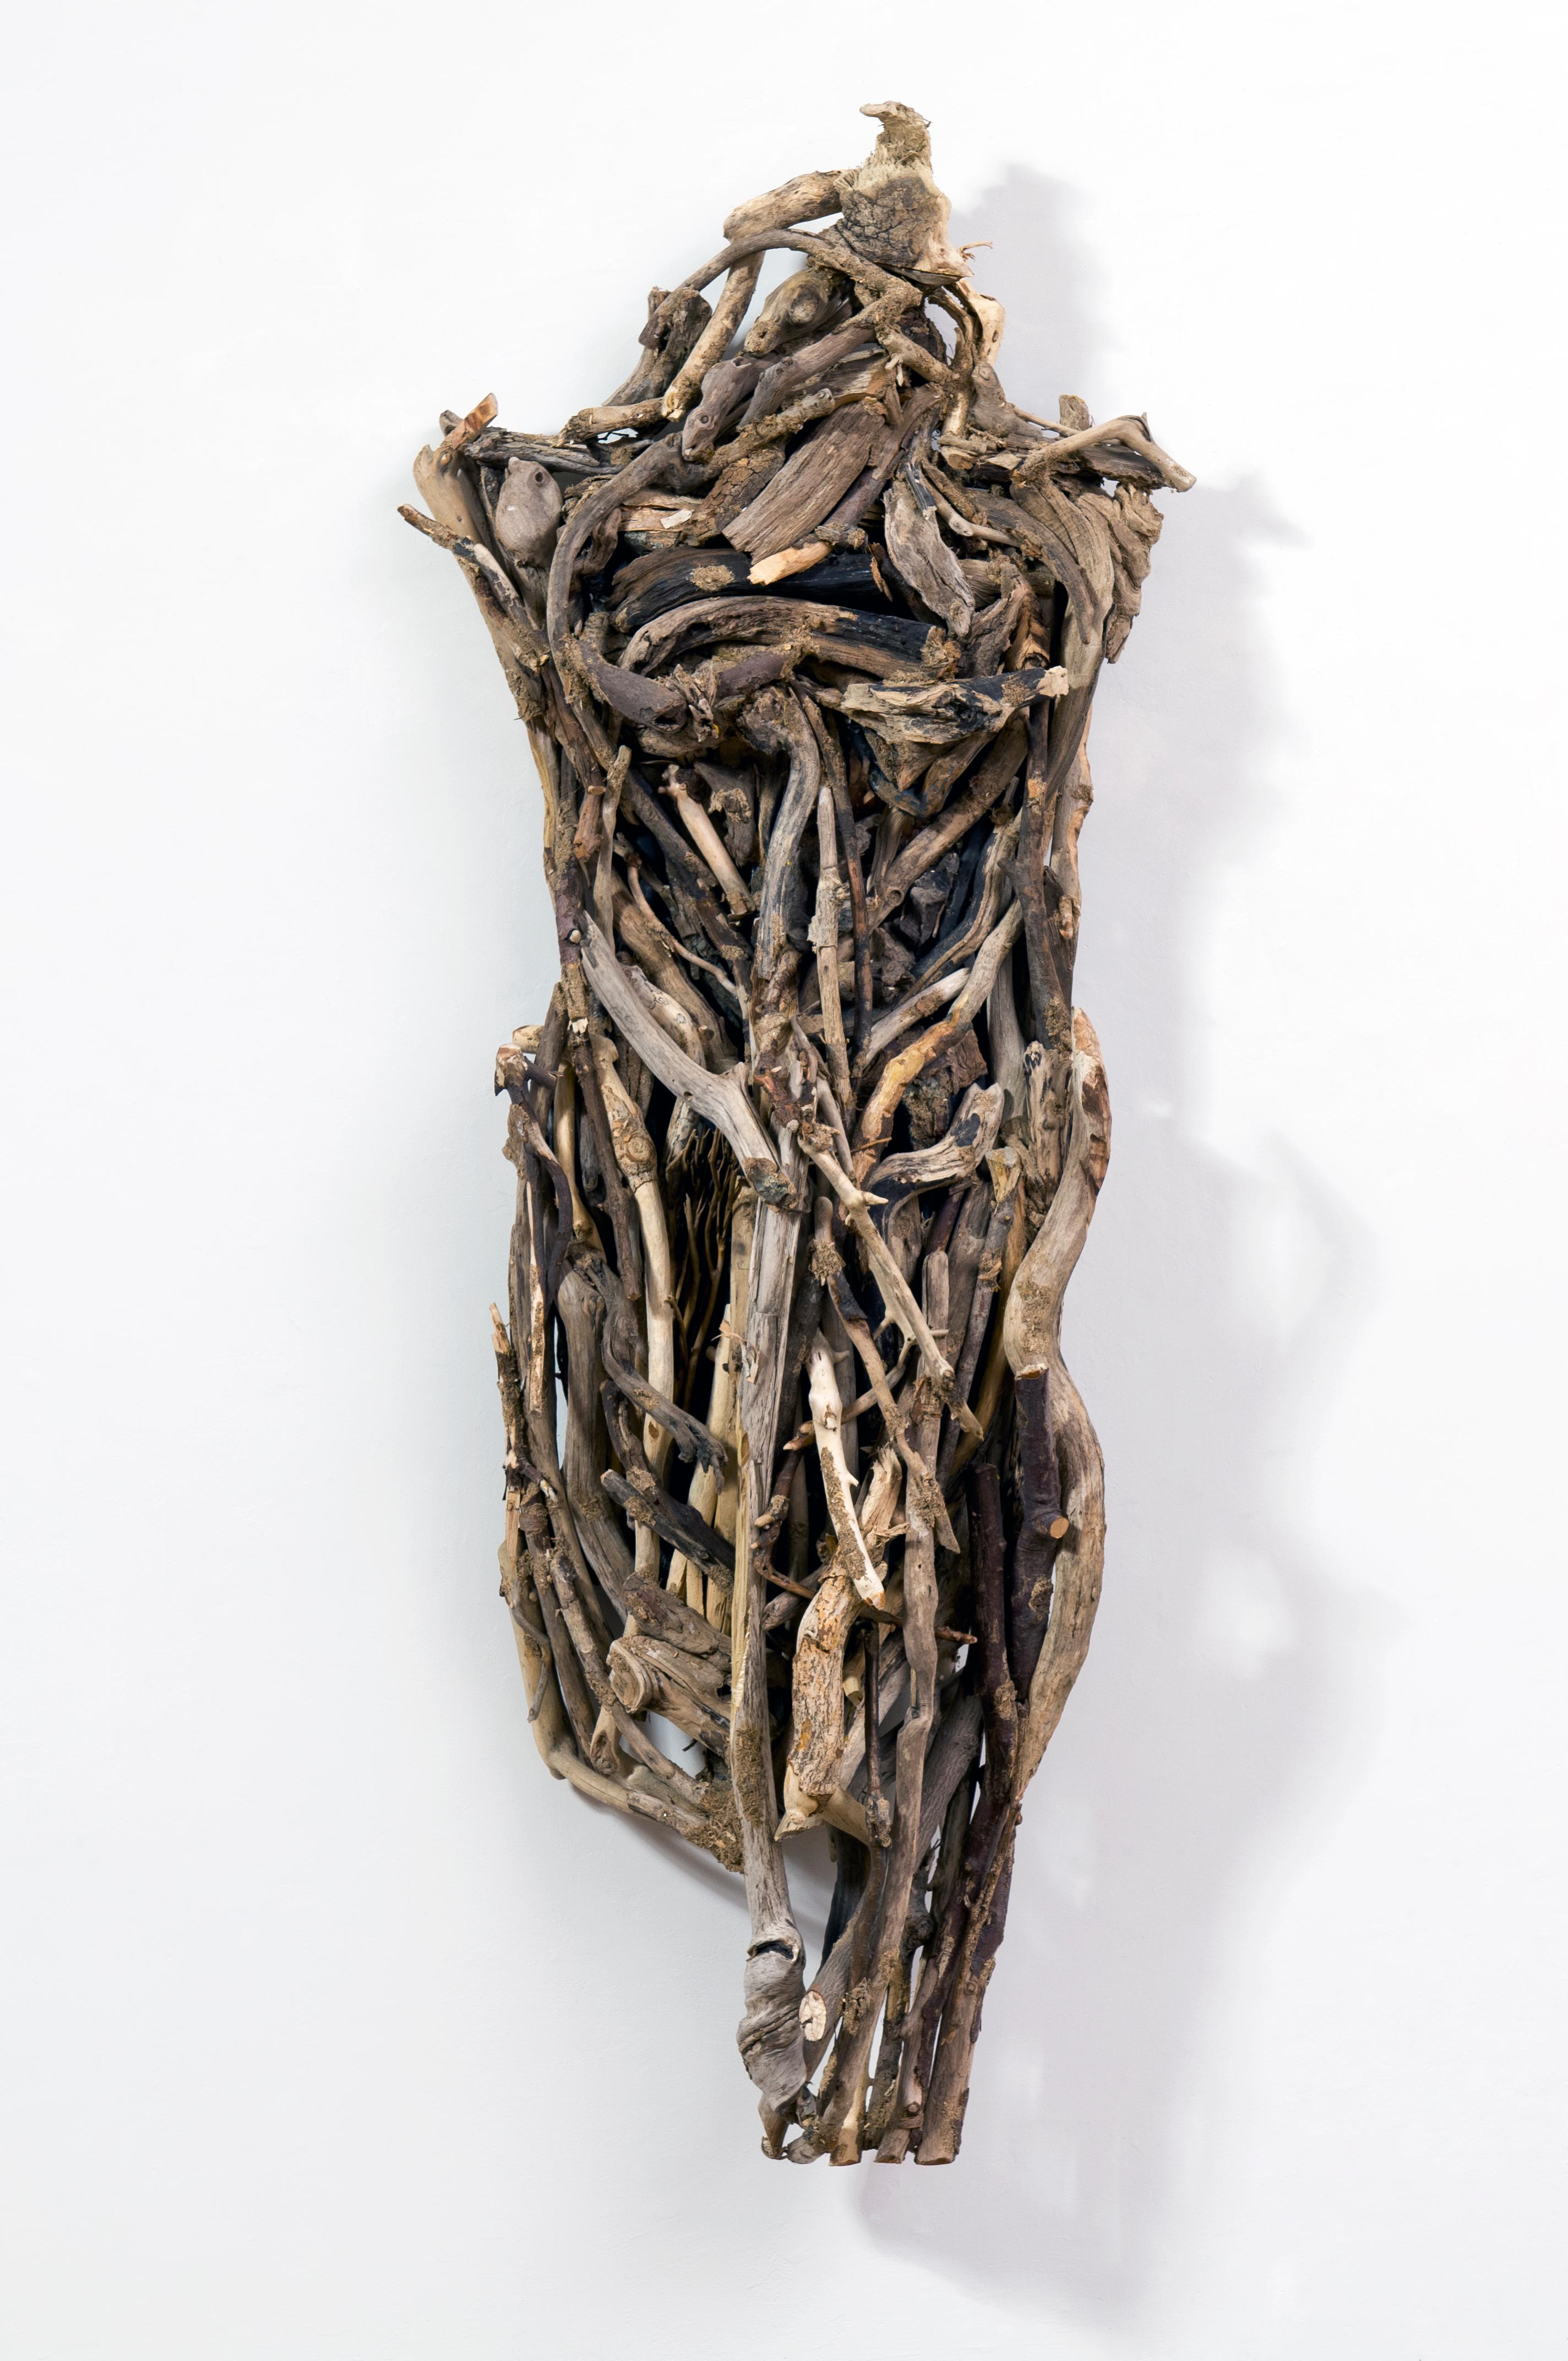 Diese Skulptur aus Linda Steins "I am the Environment"-Serie untersucht die Beziehung der Künstlerin zur Erde und thematisiert die Verbundenheit aller Lebewesen miteinander.

Steins Werke befinden sich in mehr als 25 ständigen Sammlungen von Museen,